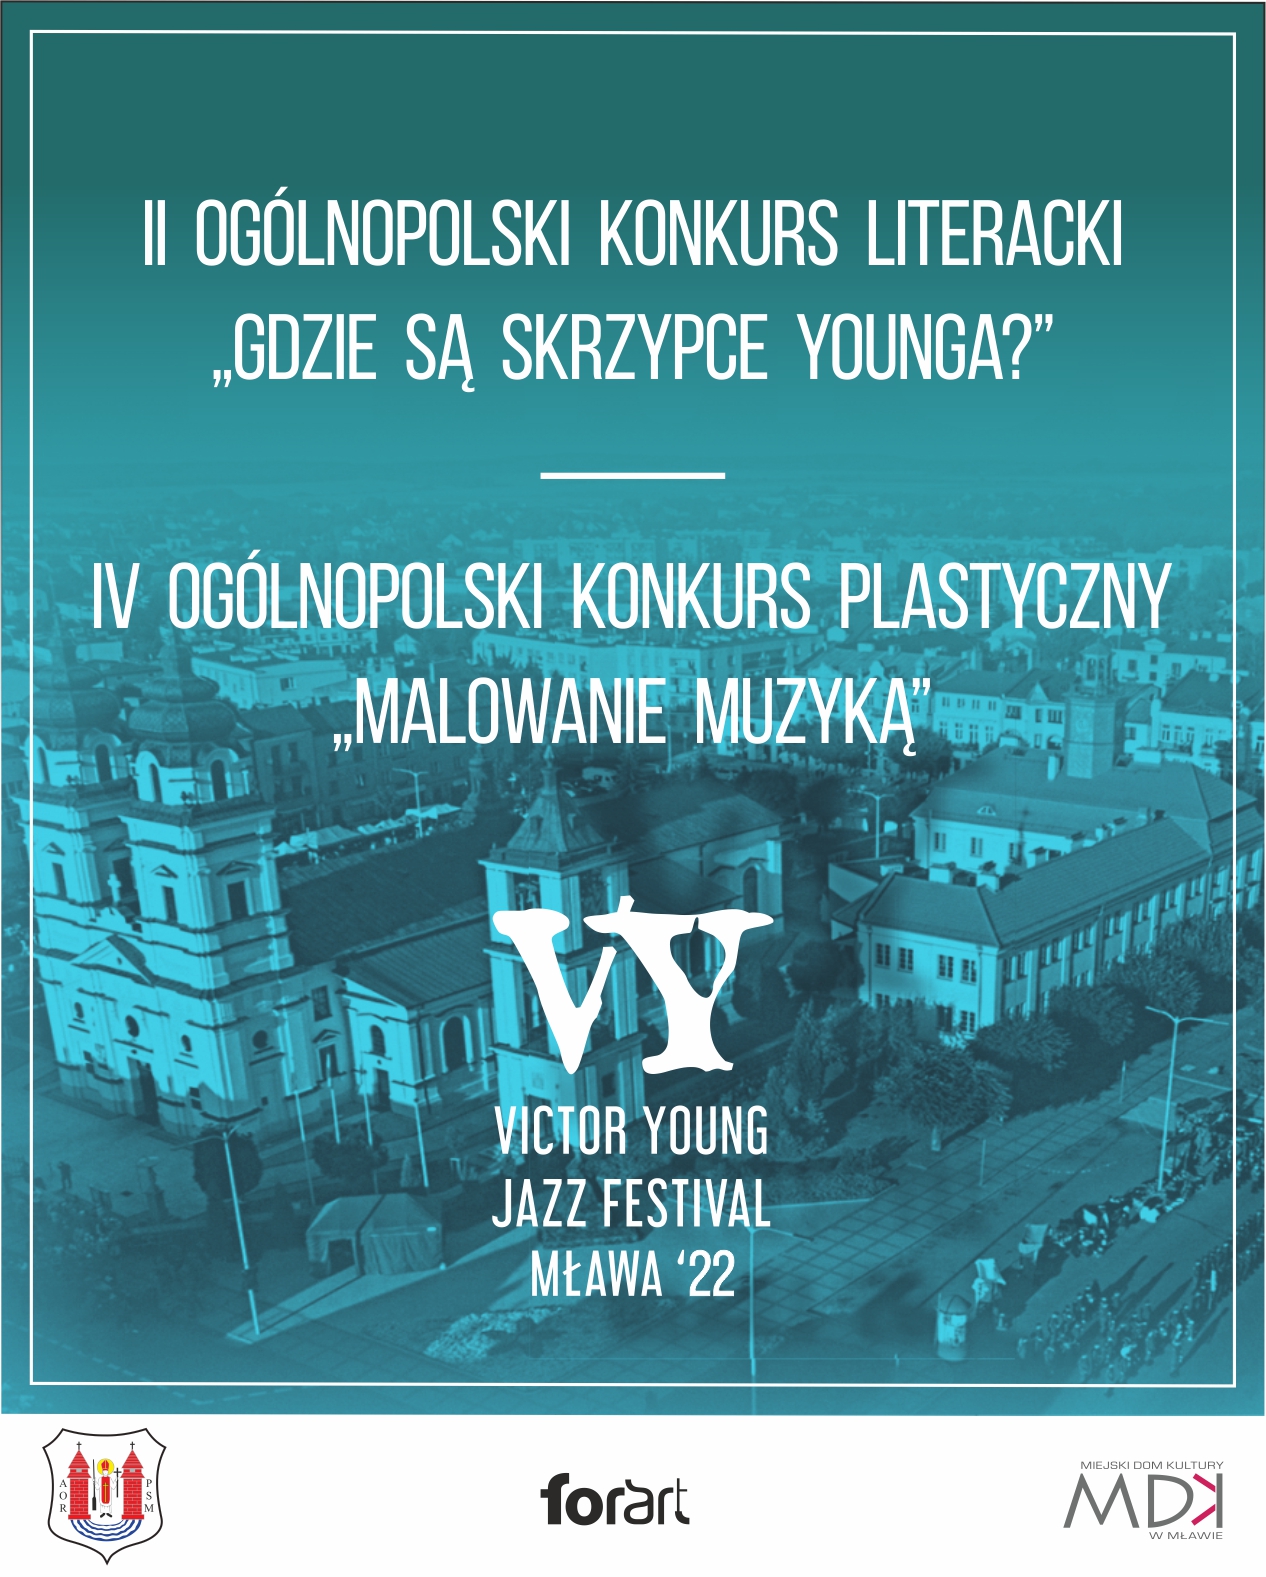 Ogolnopolski Konkurs Plastyczny i Literacki Victor Young.jpg 1